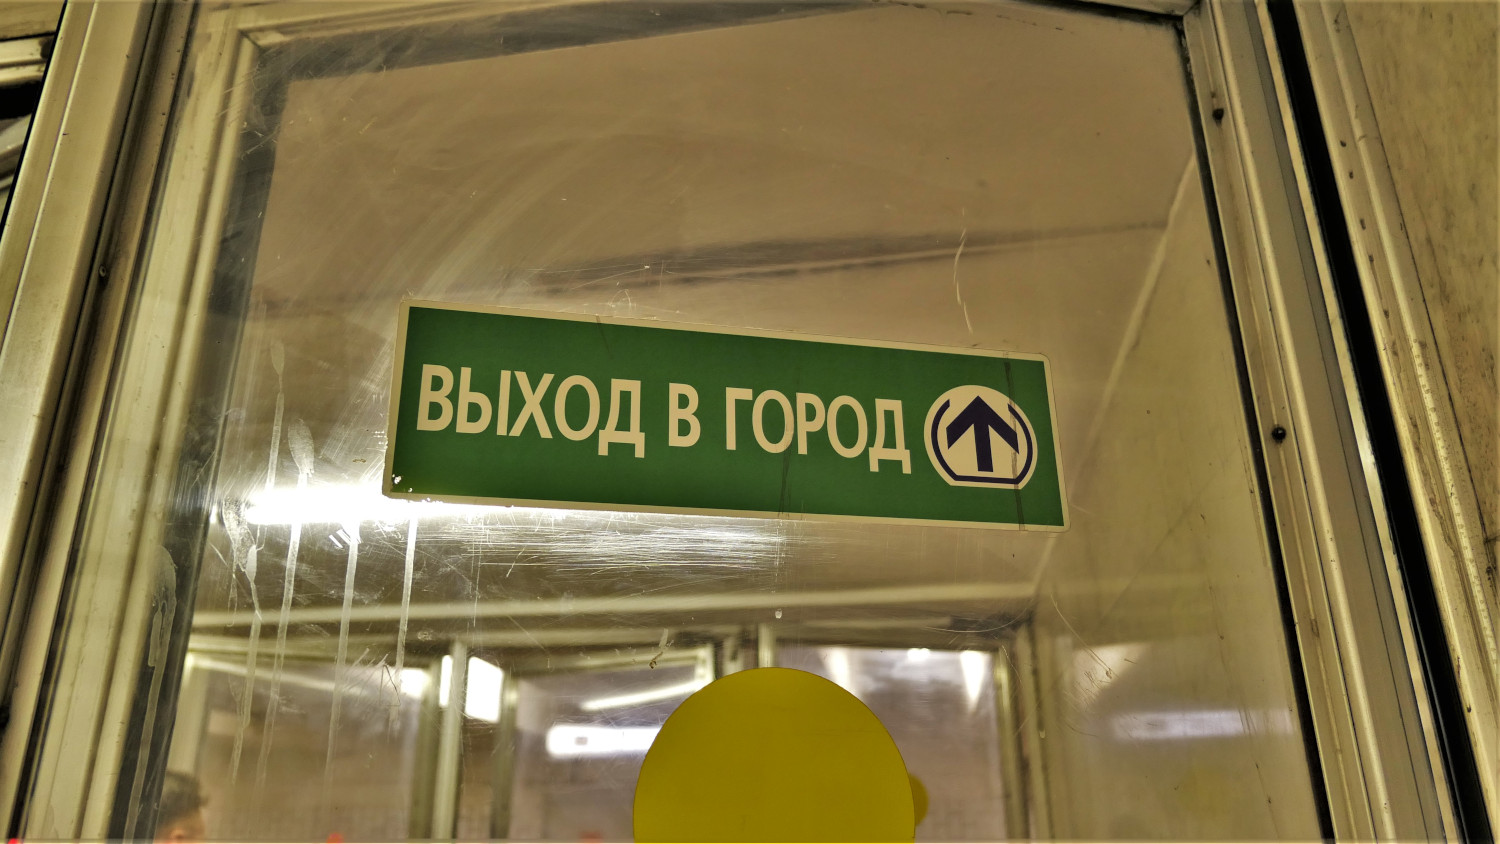 Москва — Метрополитен — [6] Калужско-Рижская линия; Москва — Метрополитен — прочее